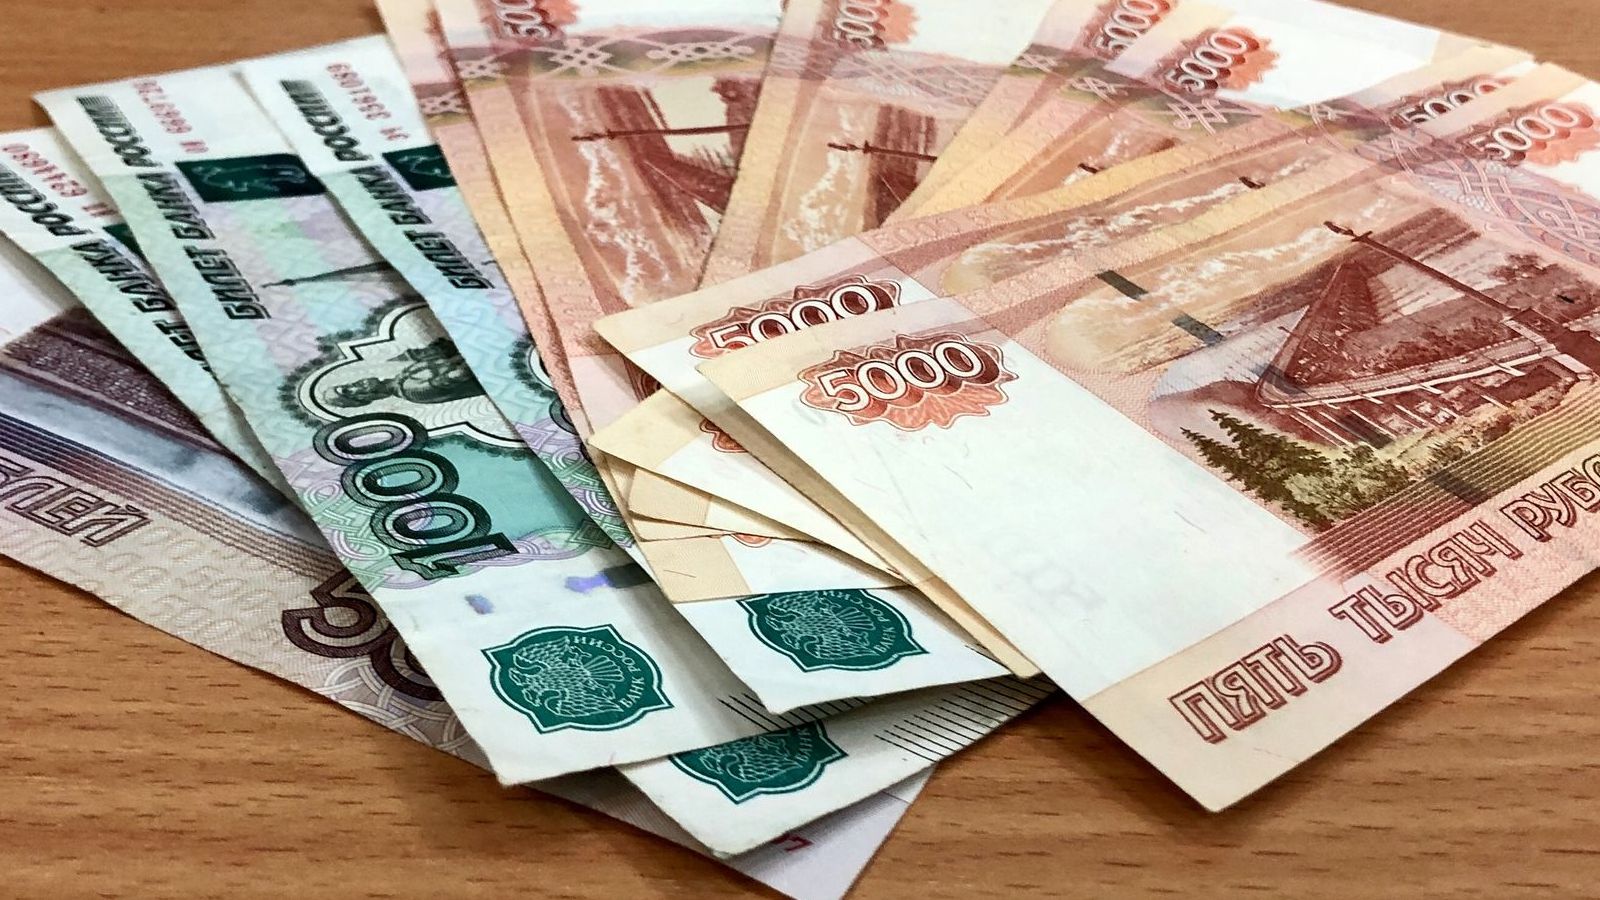 Получить 20 тыс рублей